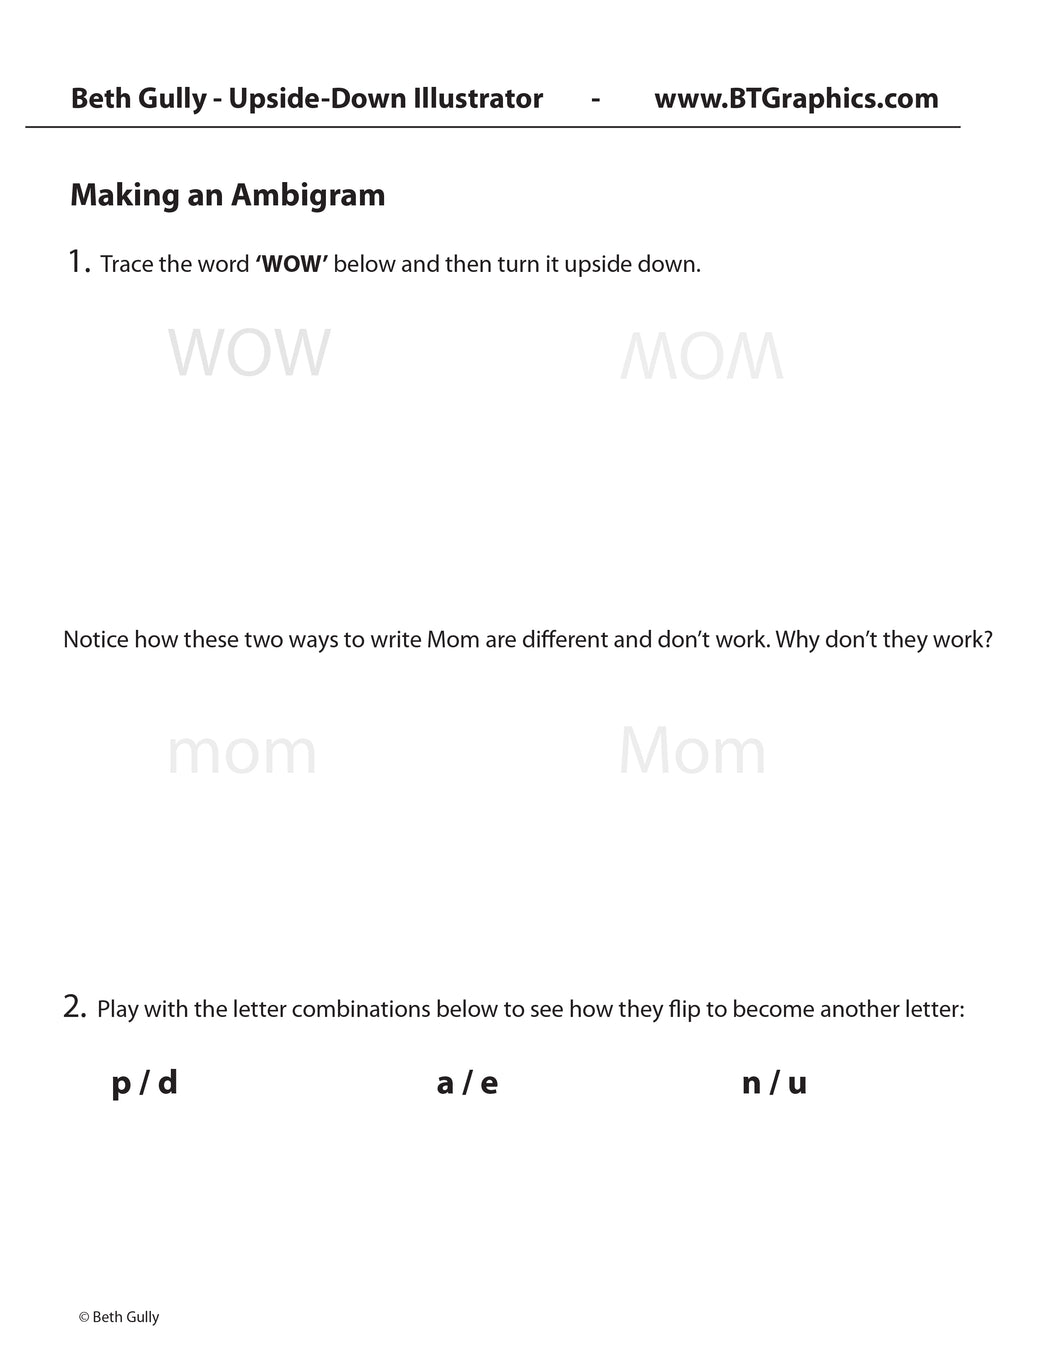 Making Ambigrams - Worksheet • Upside-Down Words'